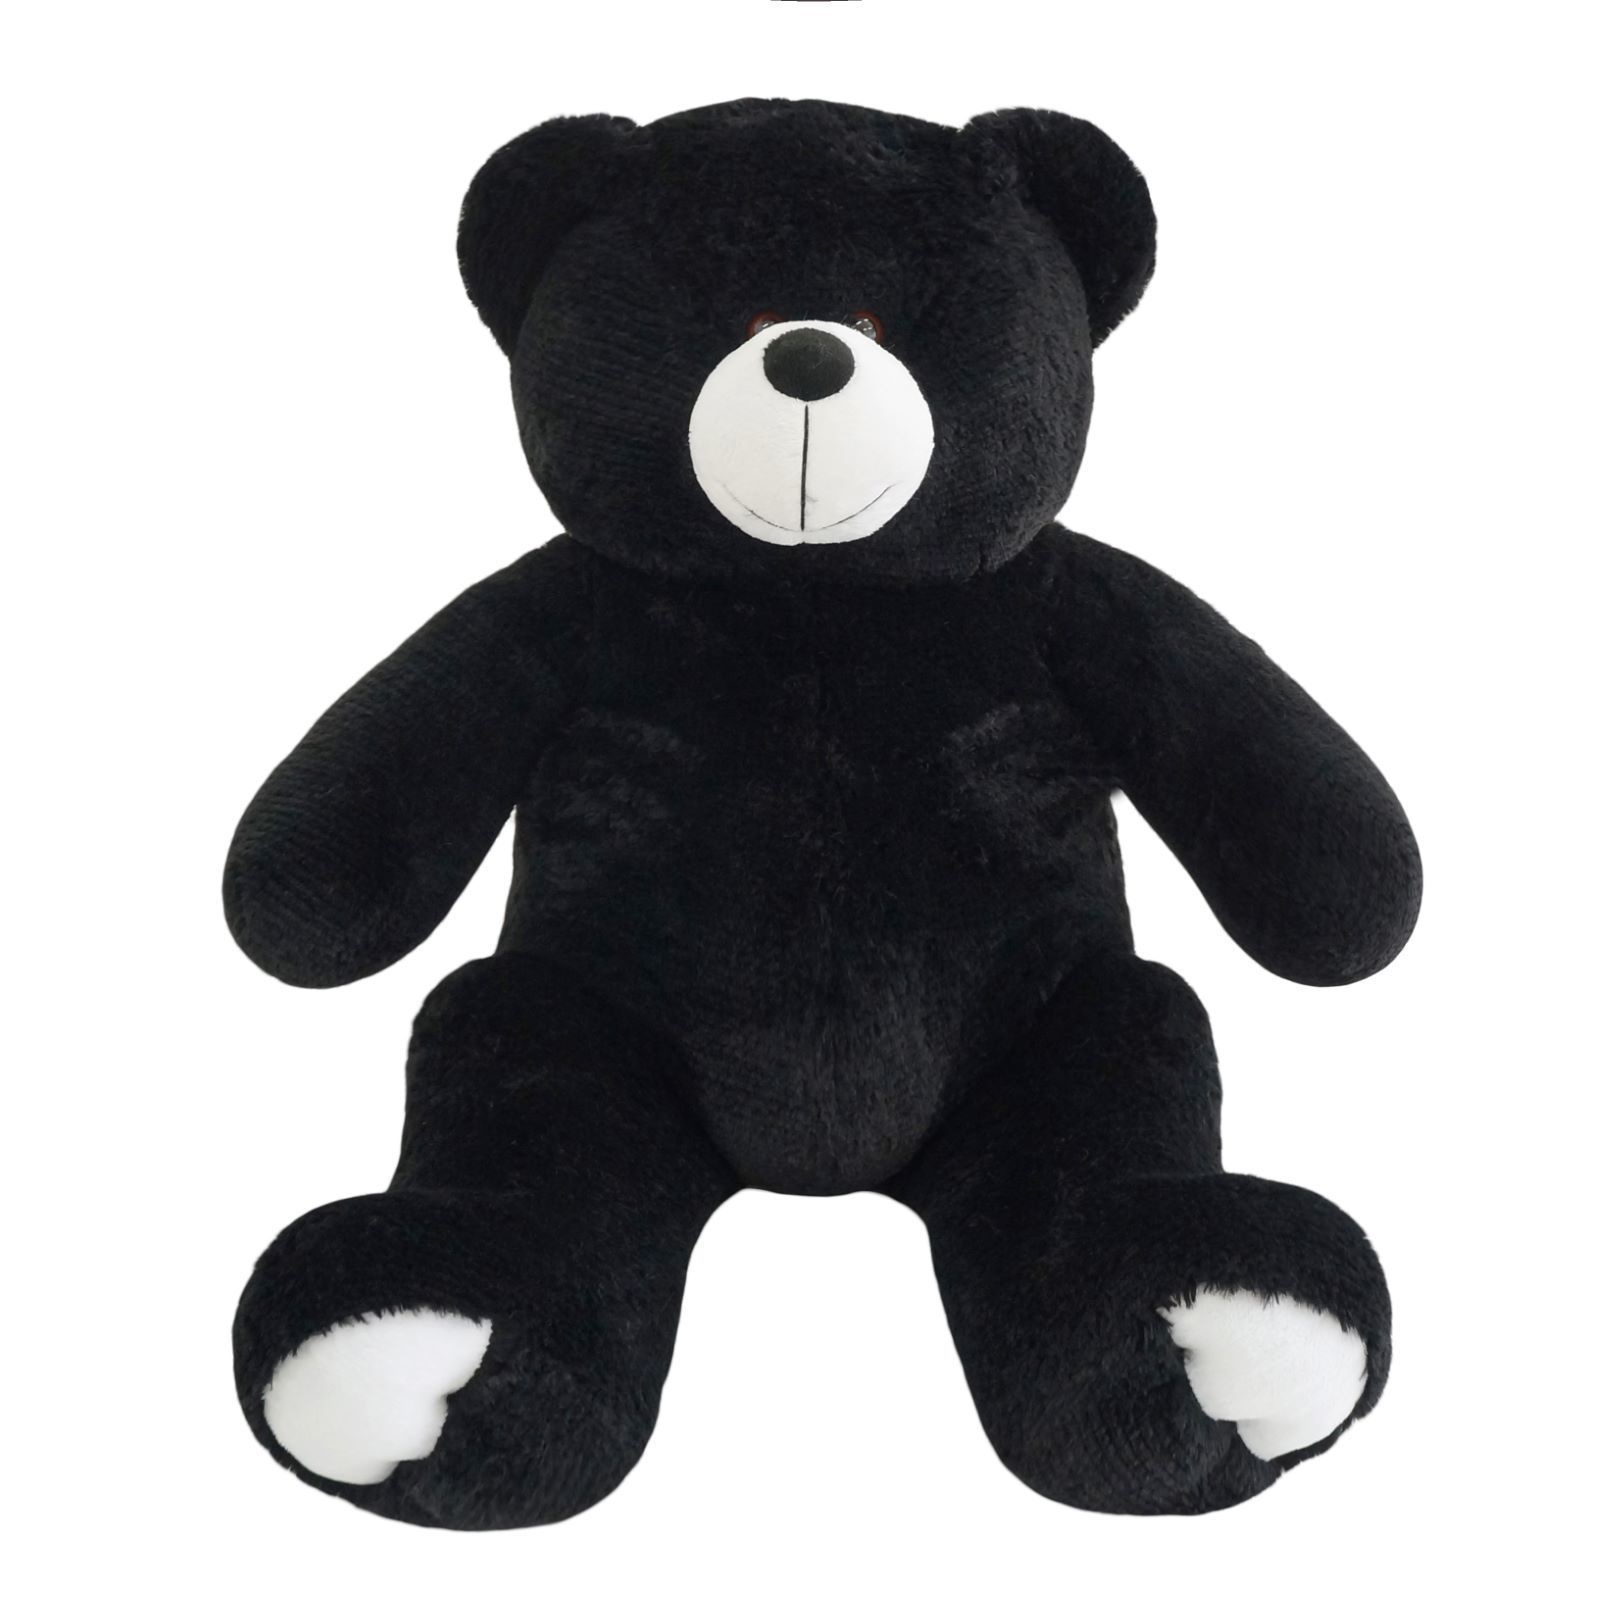 Черно плюшевая. Bear Беар мягкая игрушка. Чёрный медведь игрушка. Черная мягкая игрушка. Черная плюшевая игрушка.